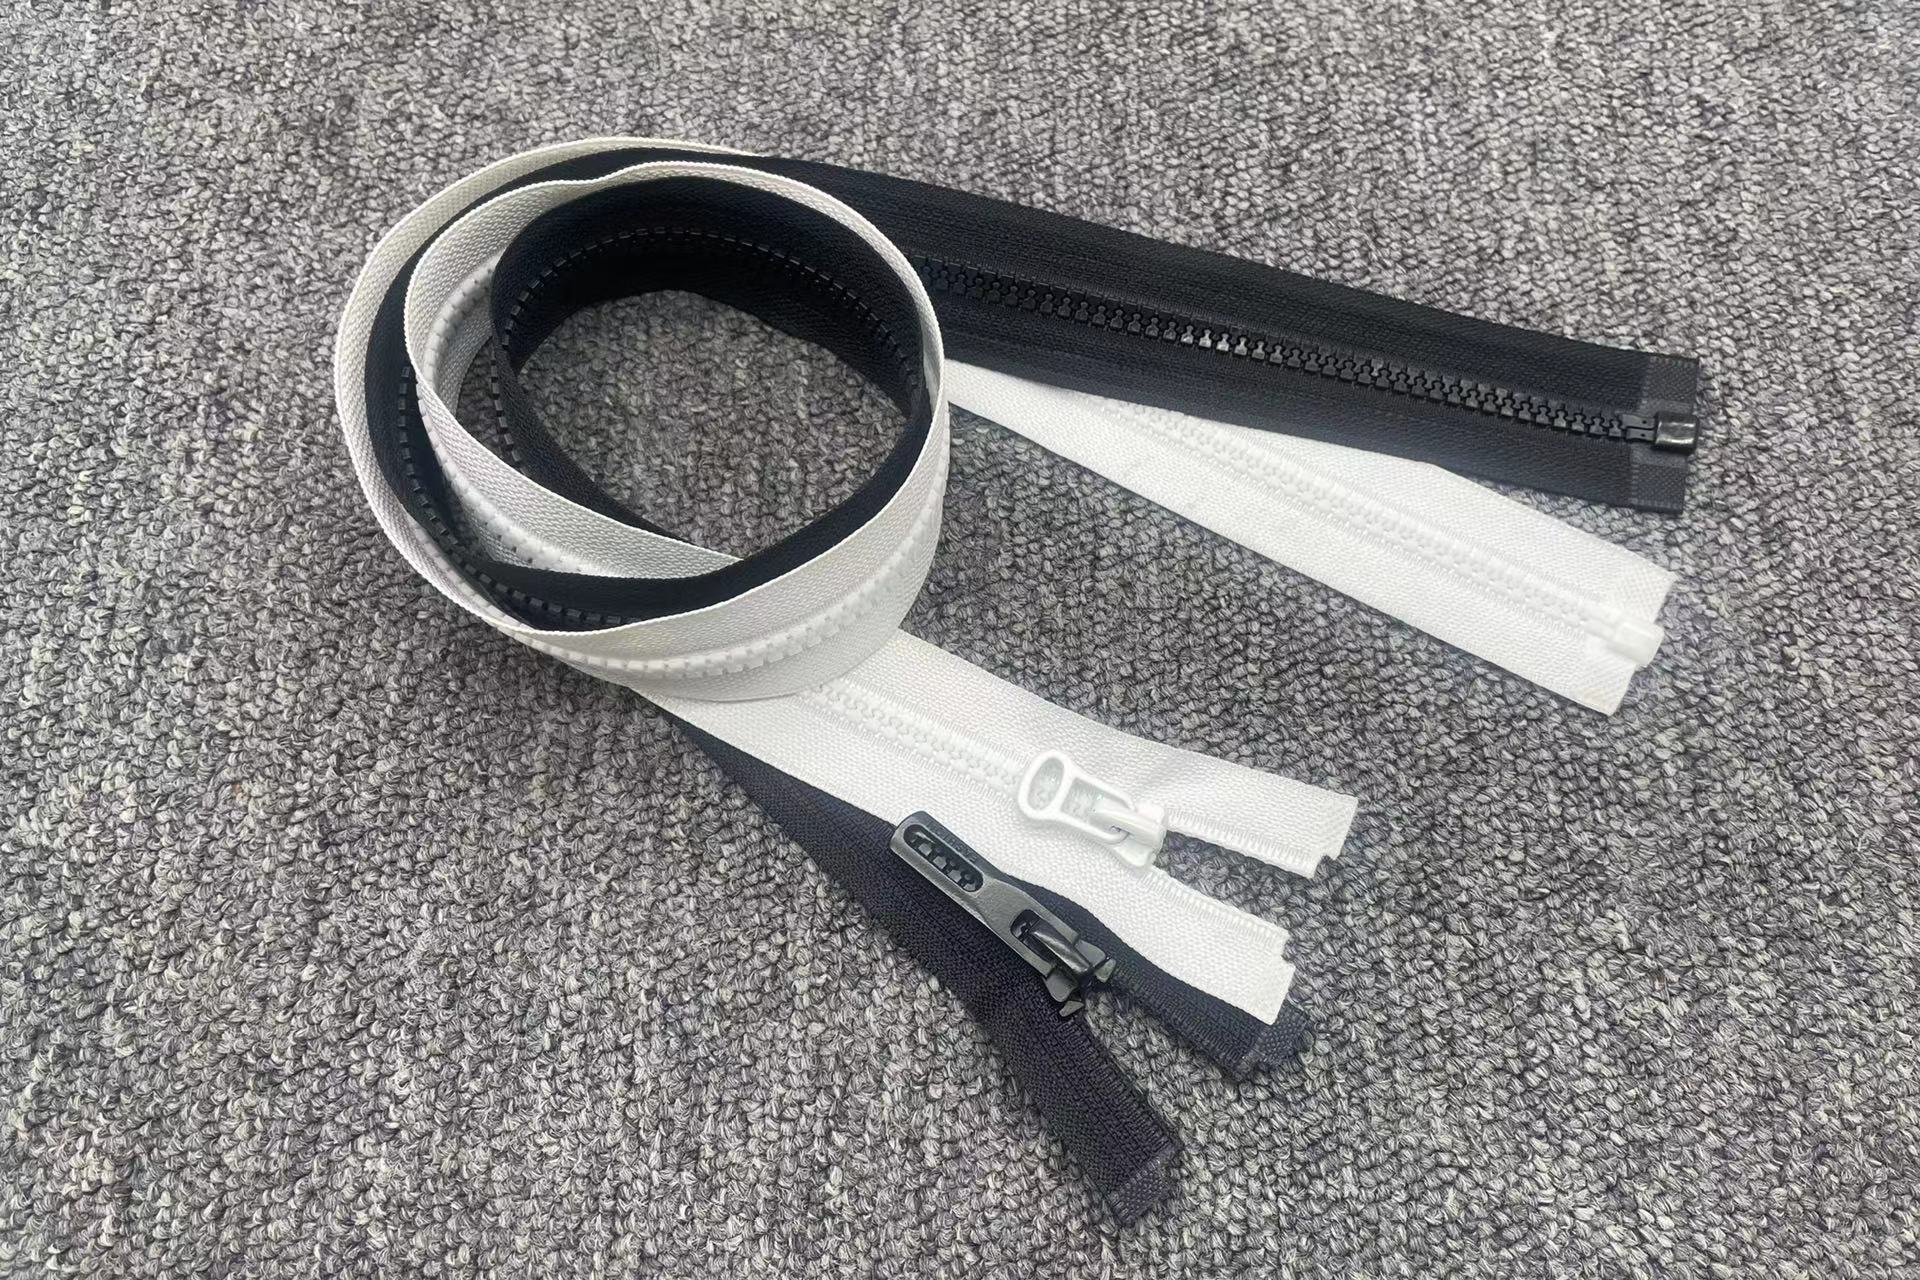 ZIPHOO #5 Open-end Plastic Zipper